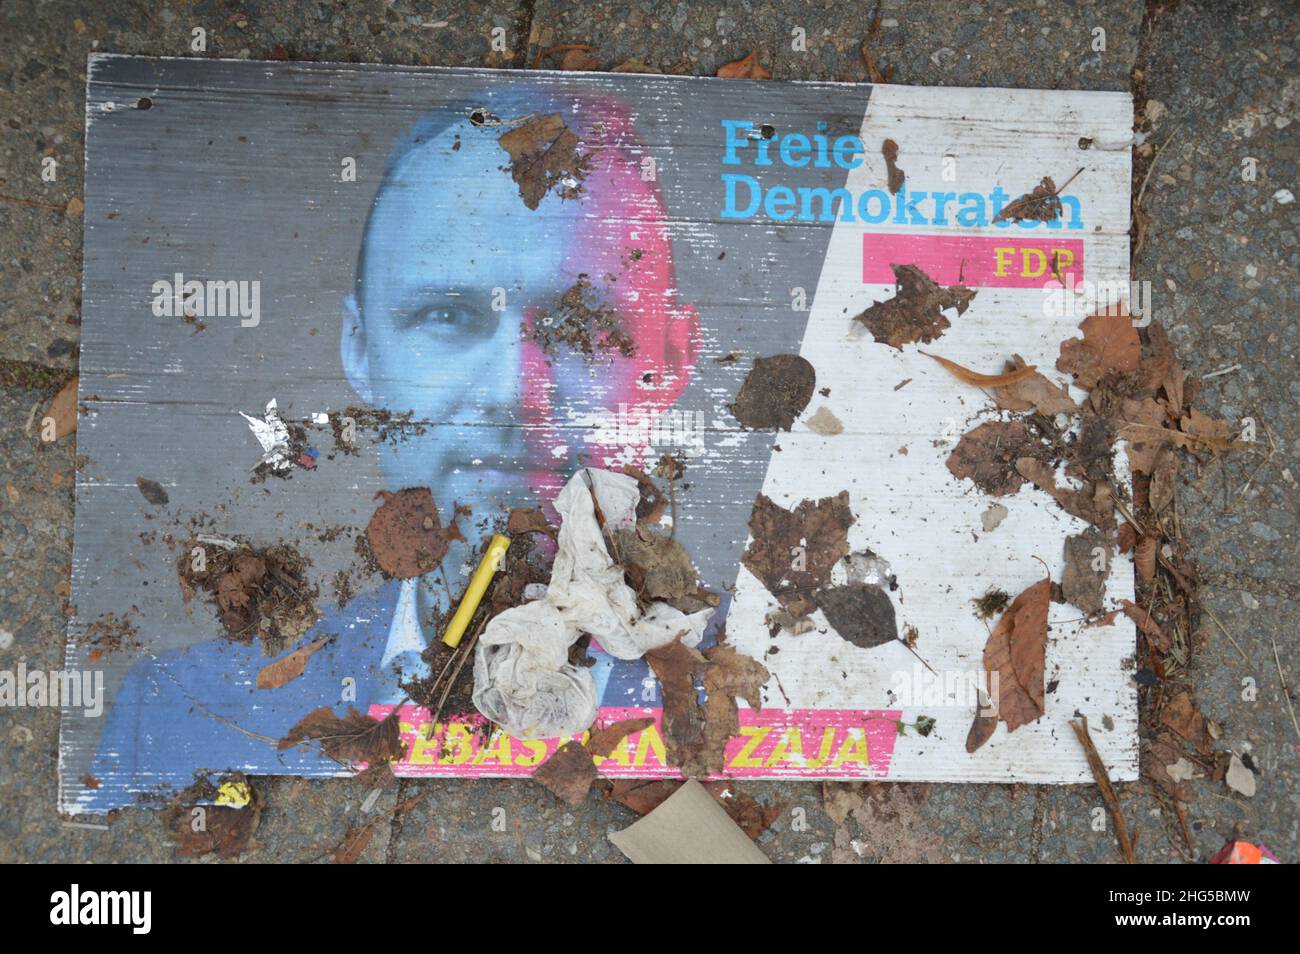 Affiche électorale de Sebastian Czaja (FDP) près du pont Glienicke à Wannsee, Berlin, Allemagne - 9 janvier 2022. Banque D'Images